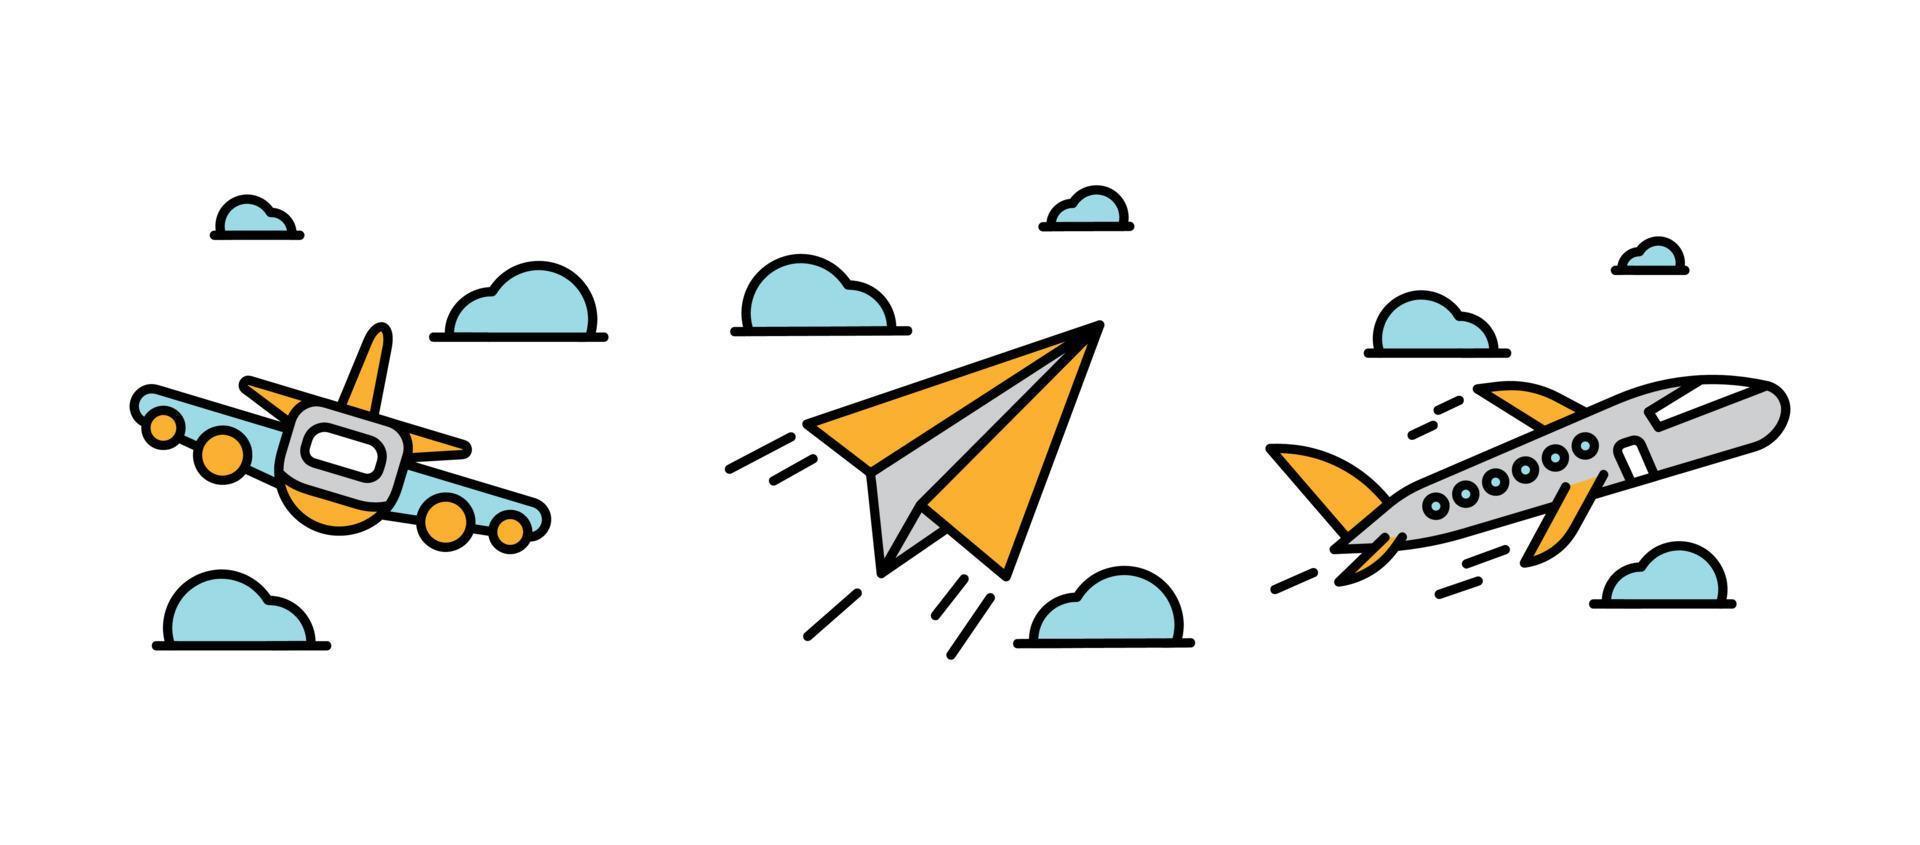 conjunto de ícones de avião. desenho de avião de papelão e avião a jato definido entre nuvens. conjunto de ícones relacionados ao avião. conjunto linear colorido. vetor